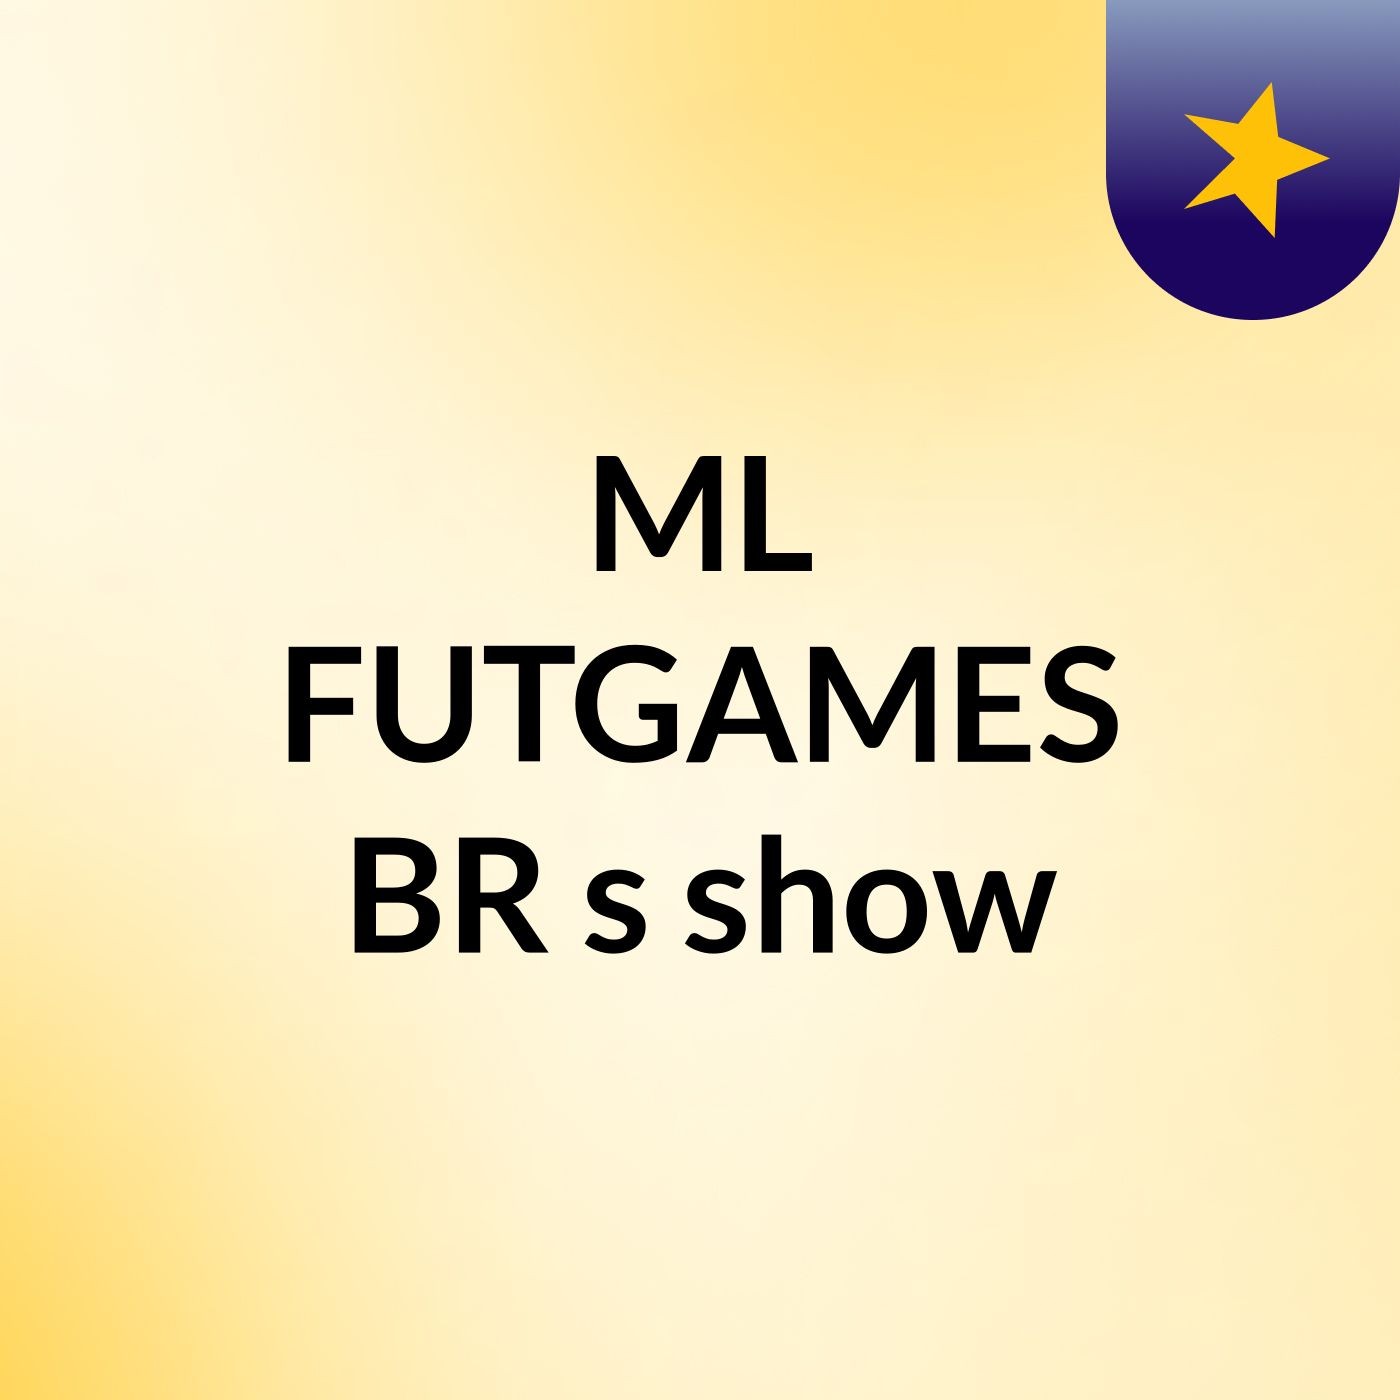 ML FUTGAMES BR's show